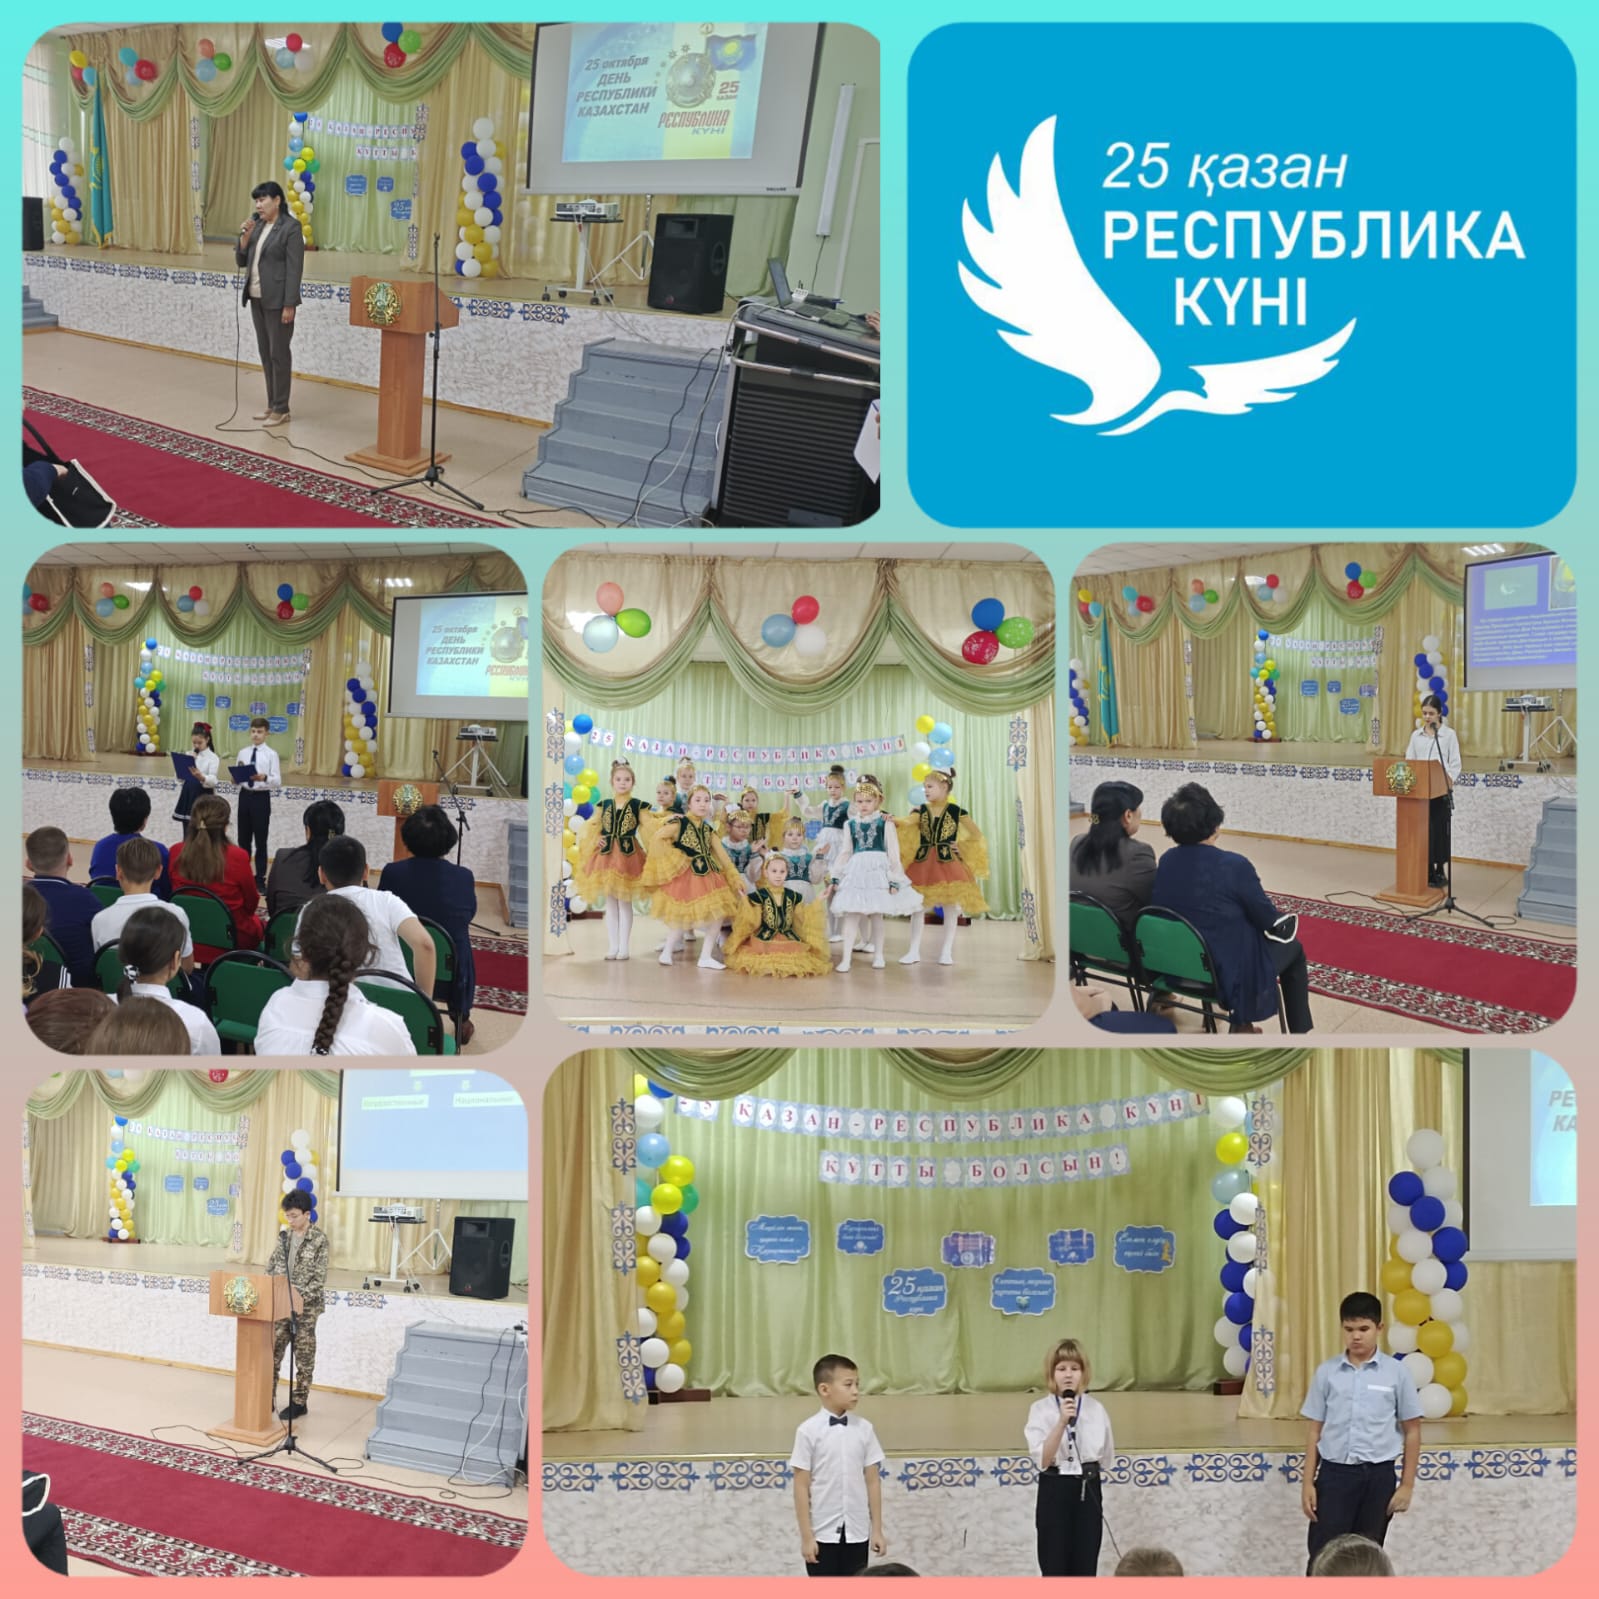 Праздничный концерт  посвященный Дню Республики Казахстан